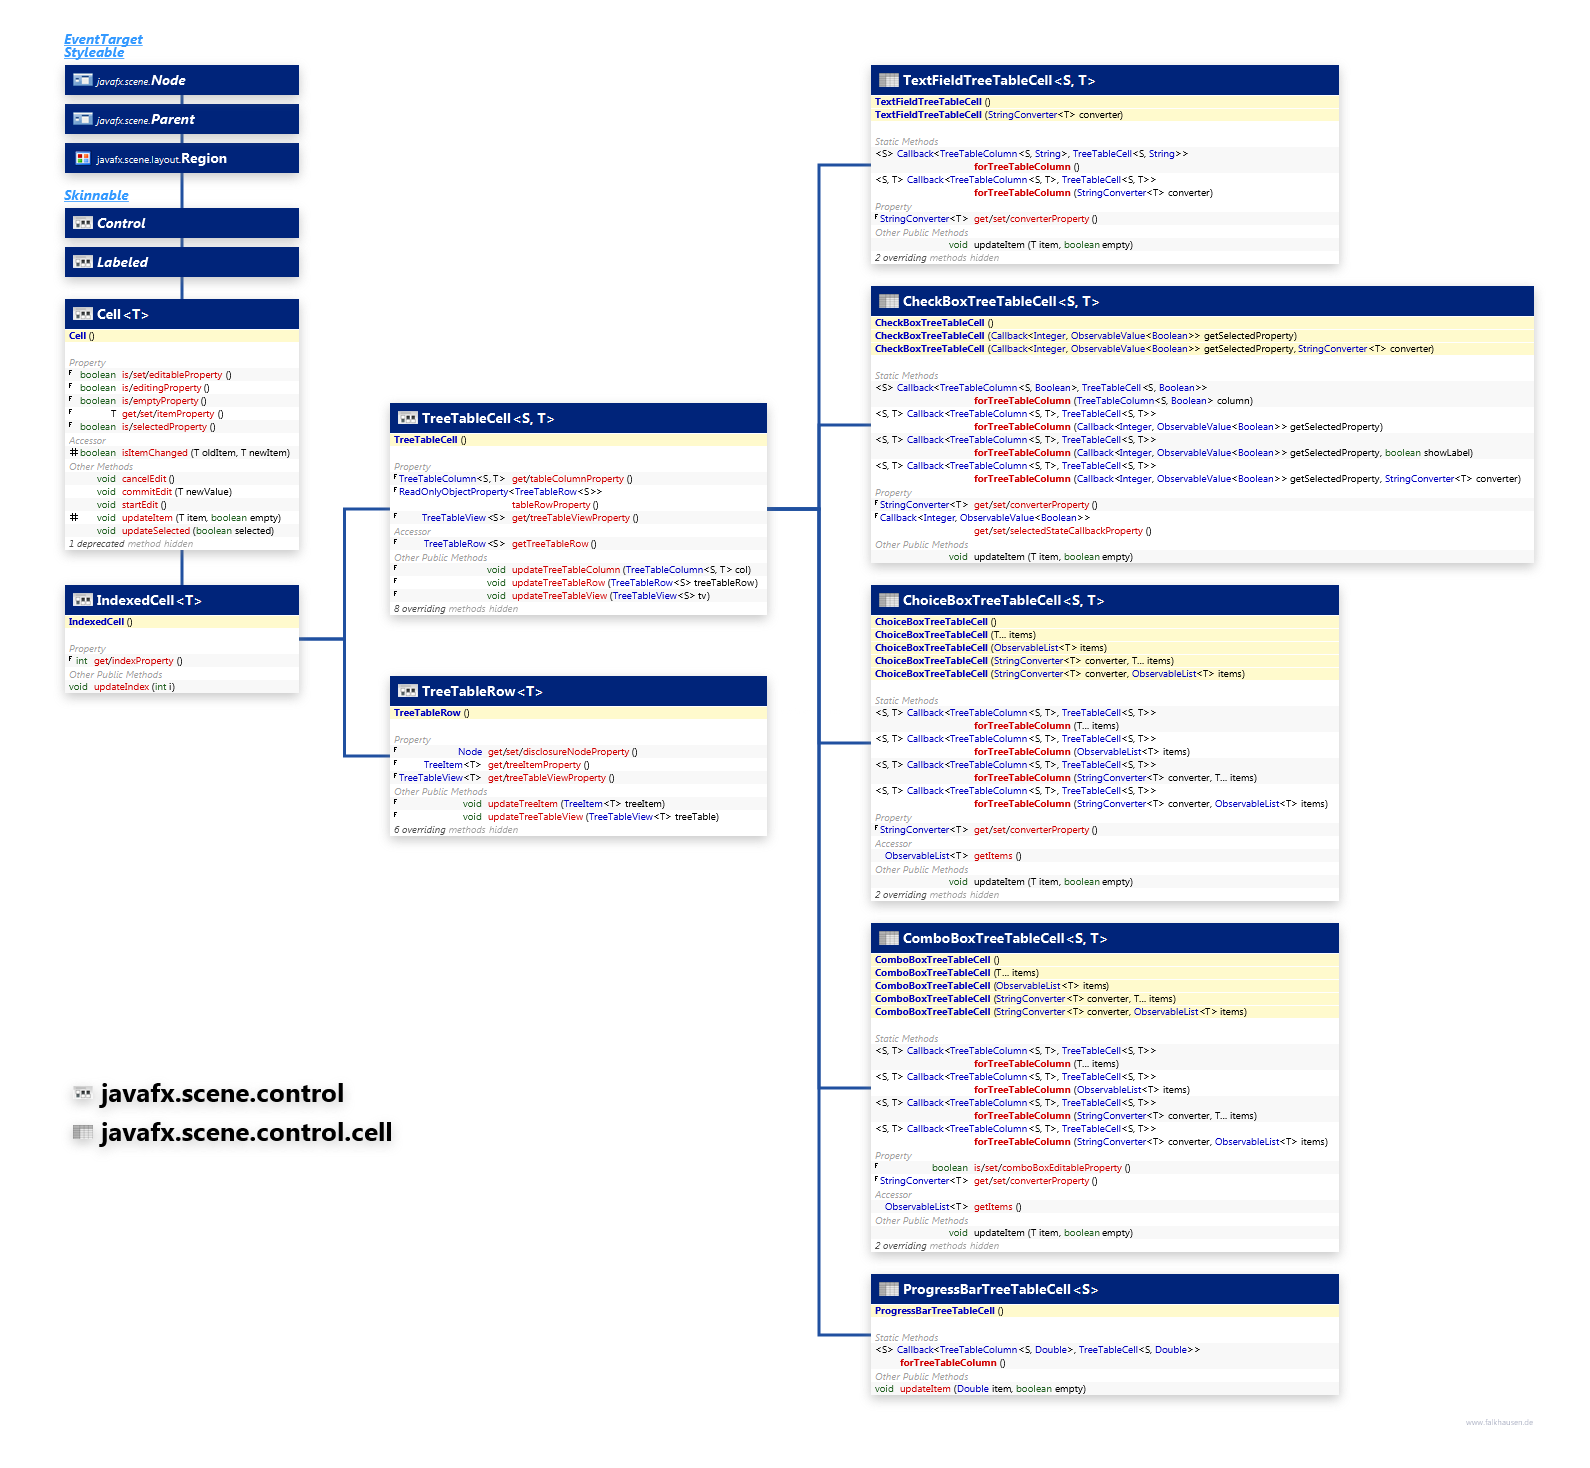 javafx.scene.control.cell javafx.scene.control TreeTableCell class diagram and api documentation for JavaFX 8